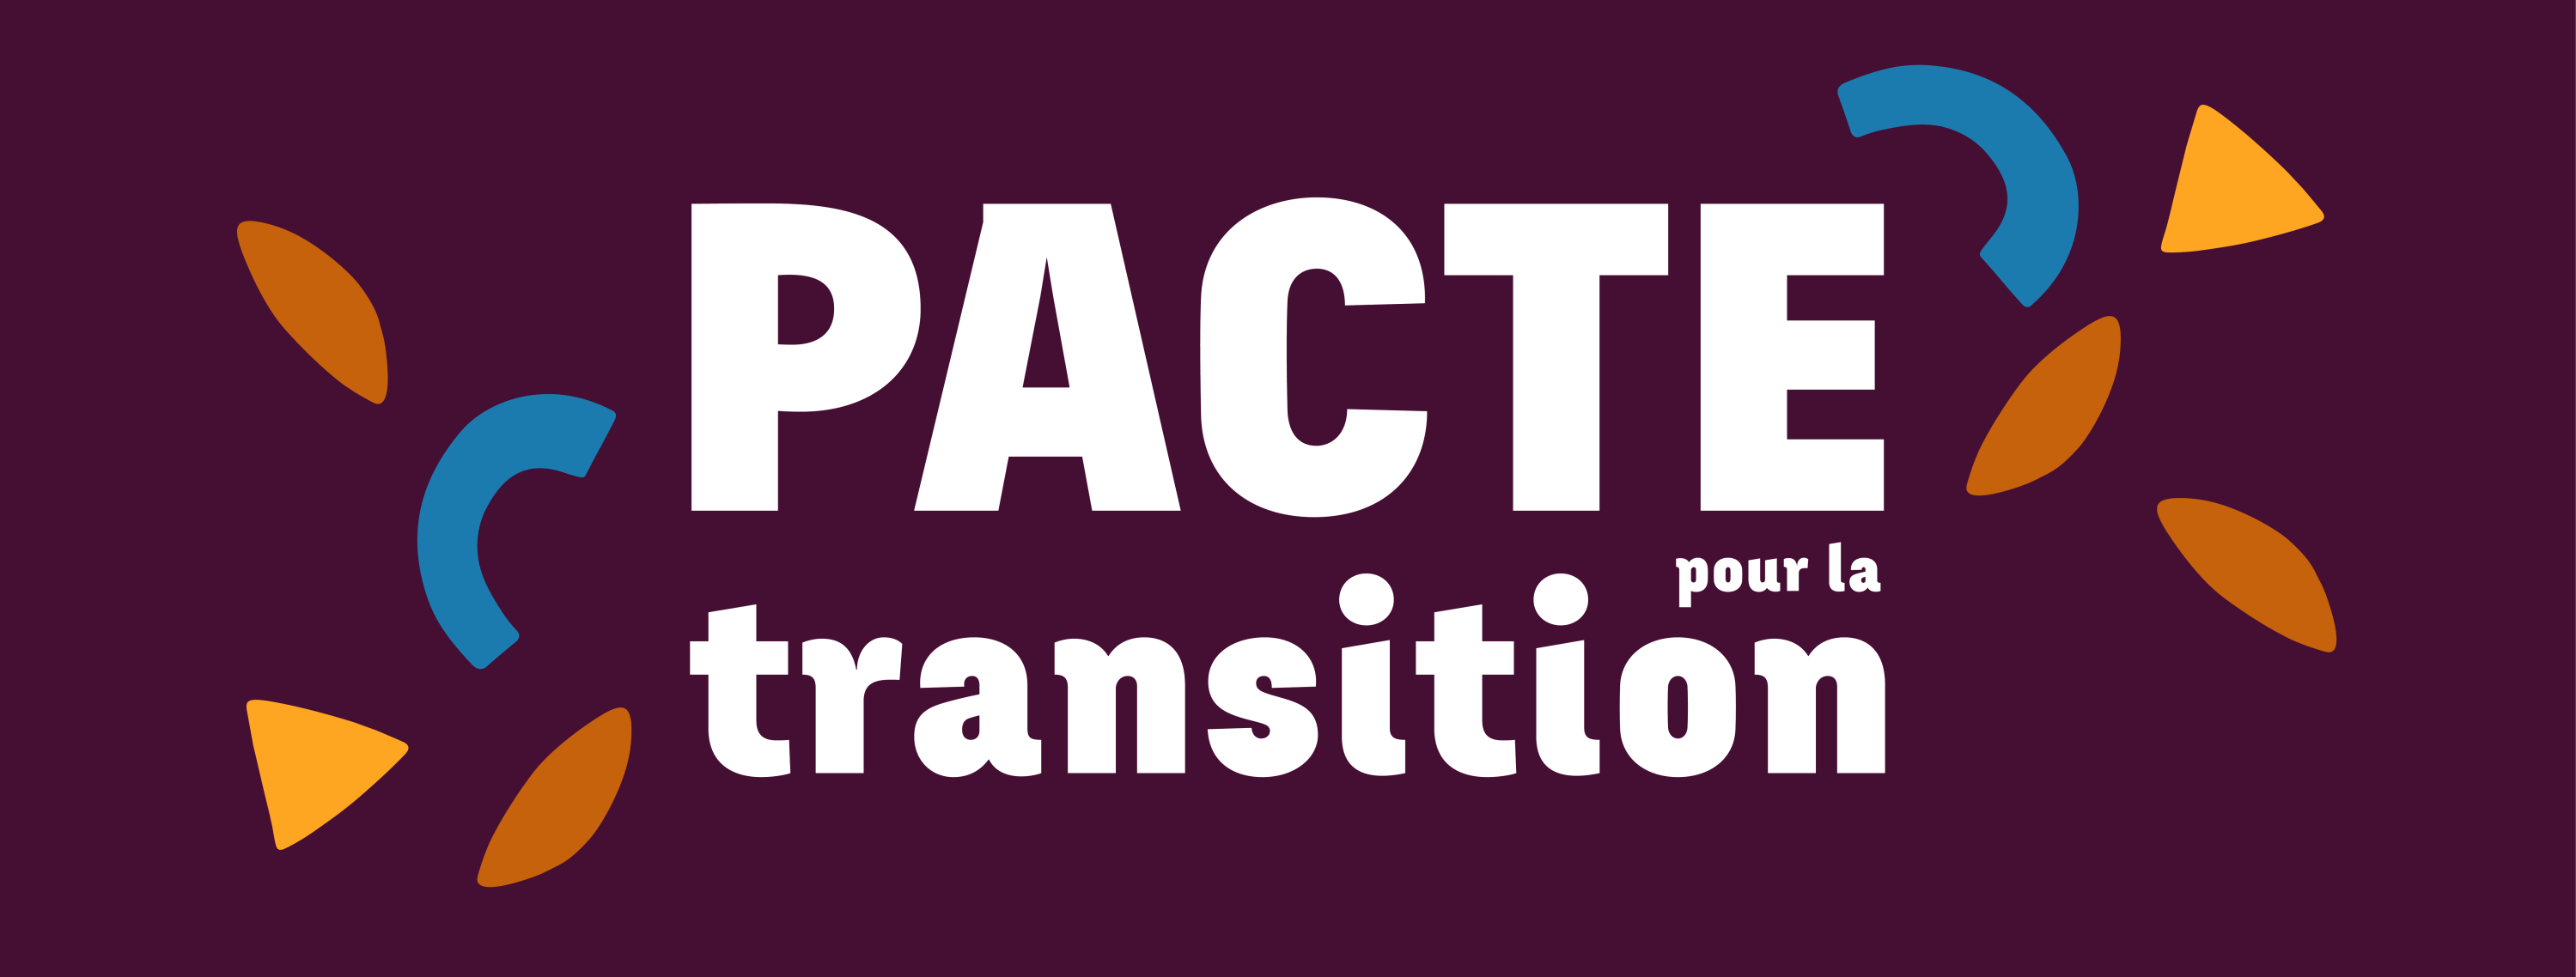 Pacte pour la transition